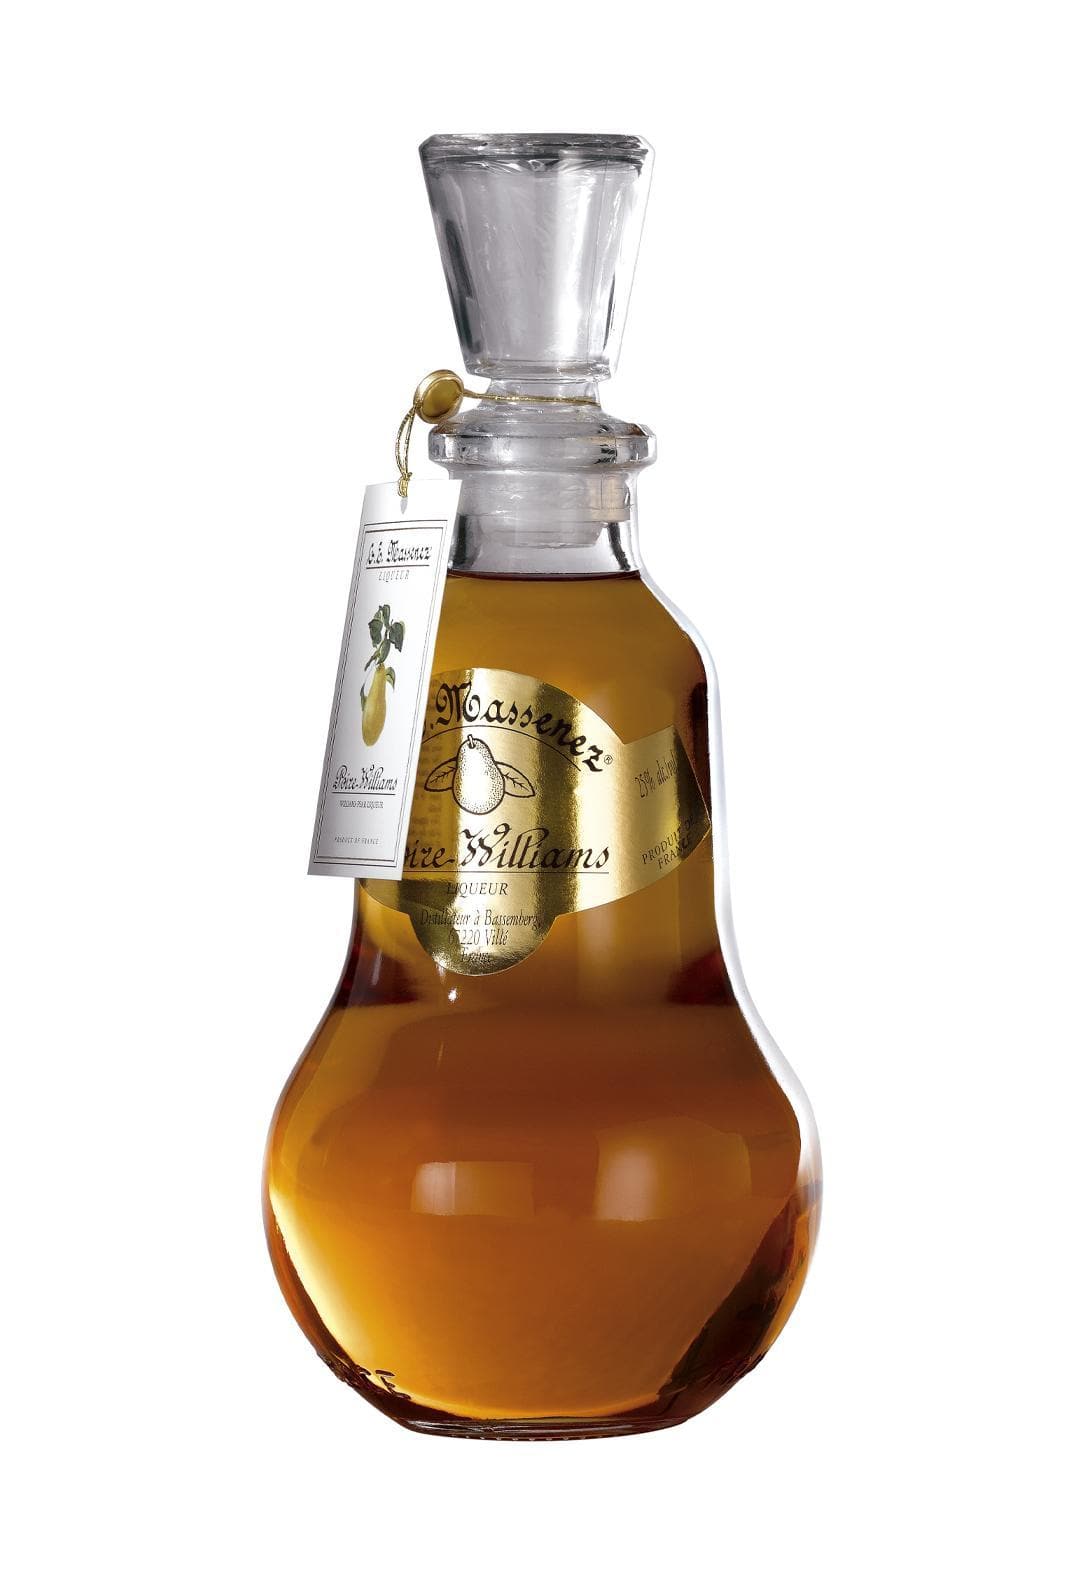 Massenez Liqueur de Poire William (William Pear) 25% 700ml | Liqueurs | Shop online at Spirits of France